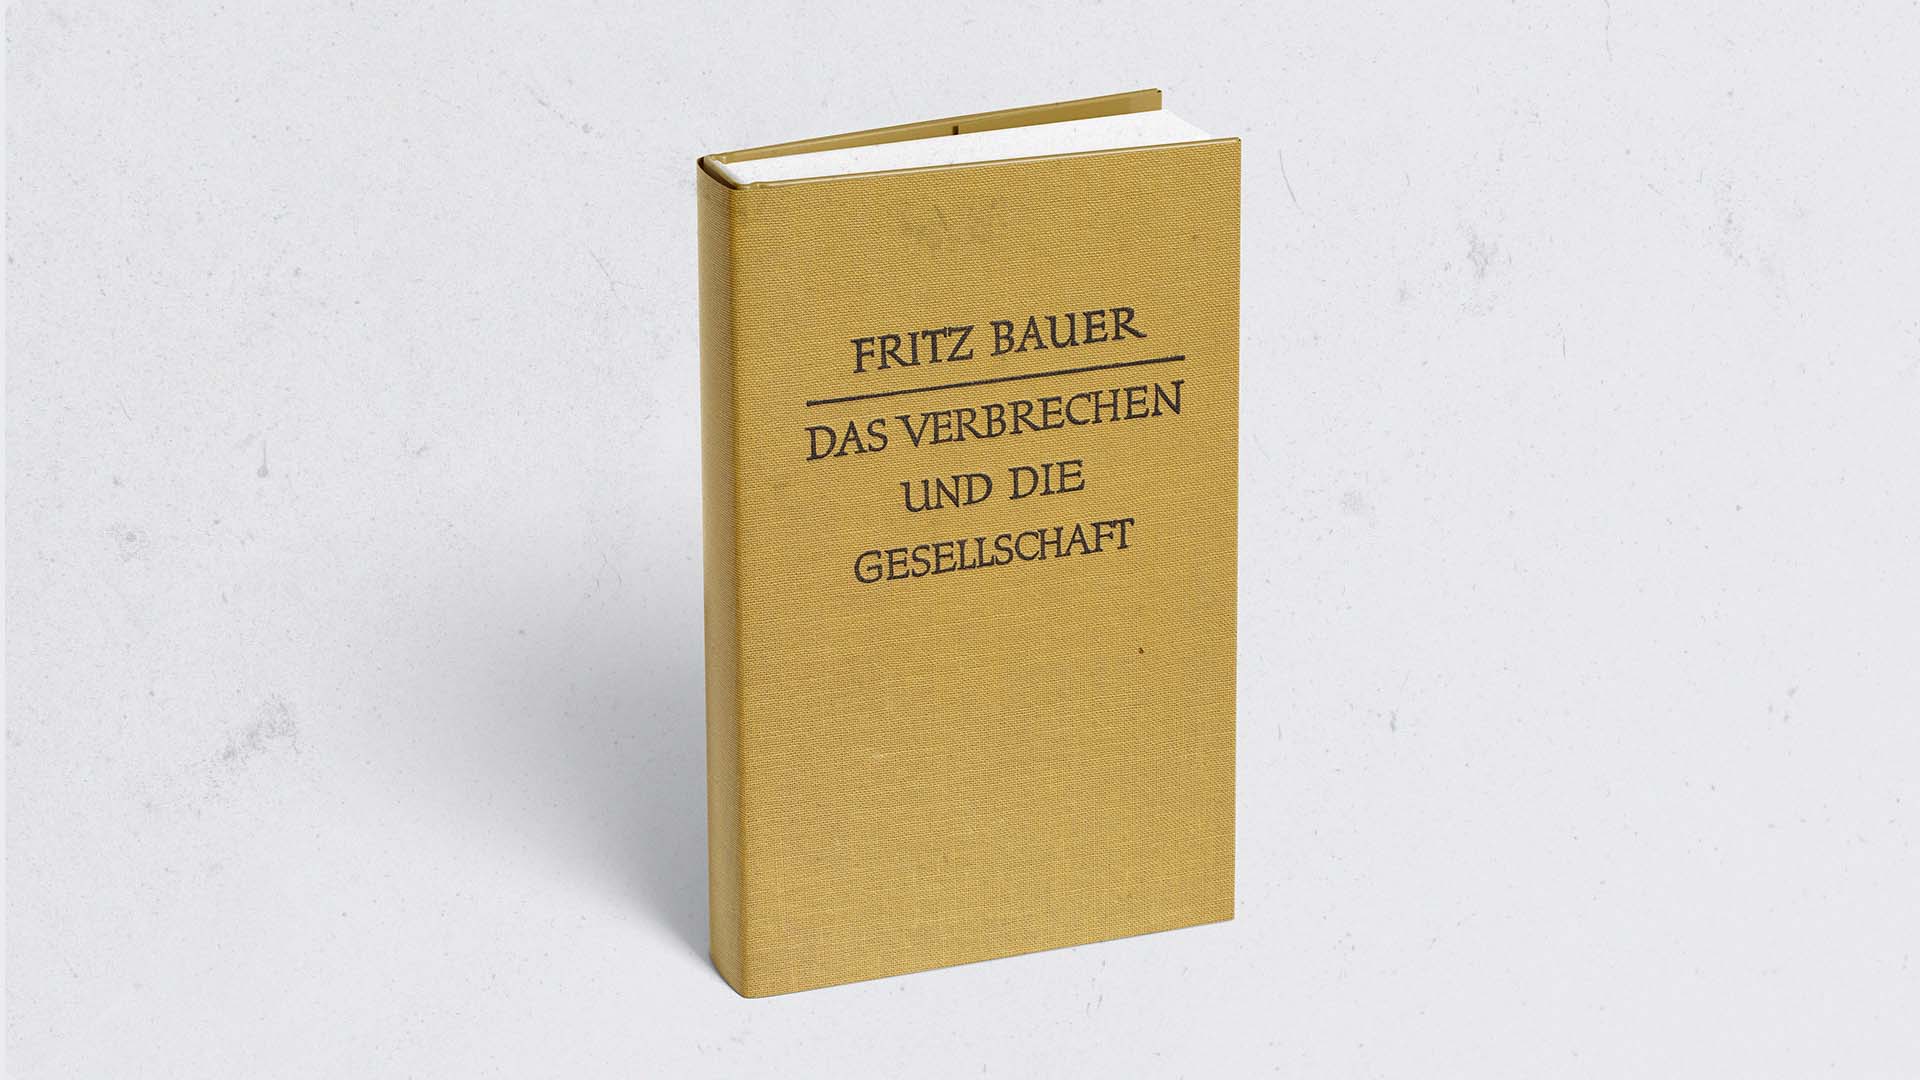 Fritz Bauer's Schriften Das Verbrechen und die Gesellschaft